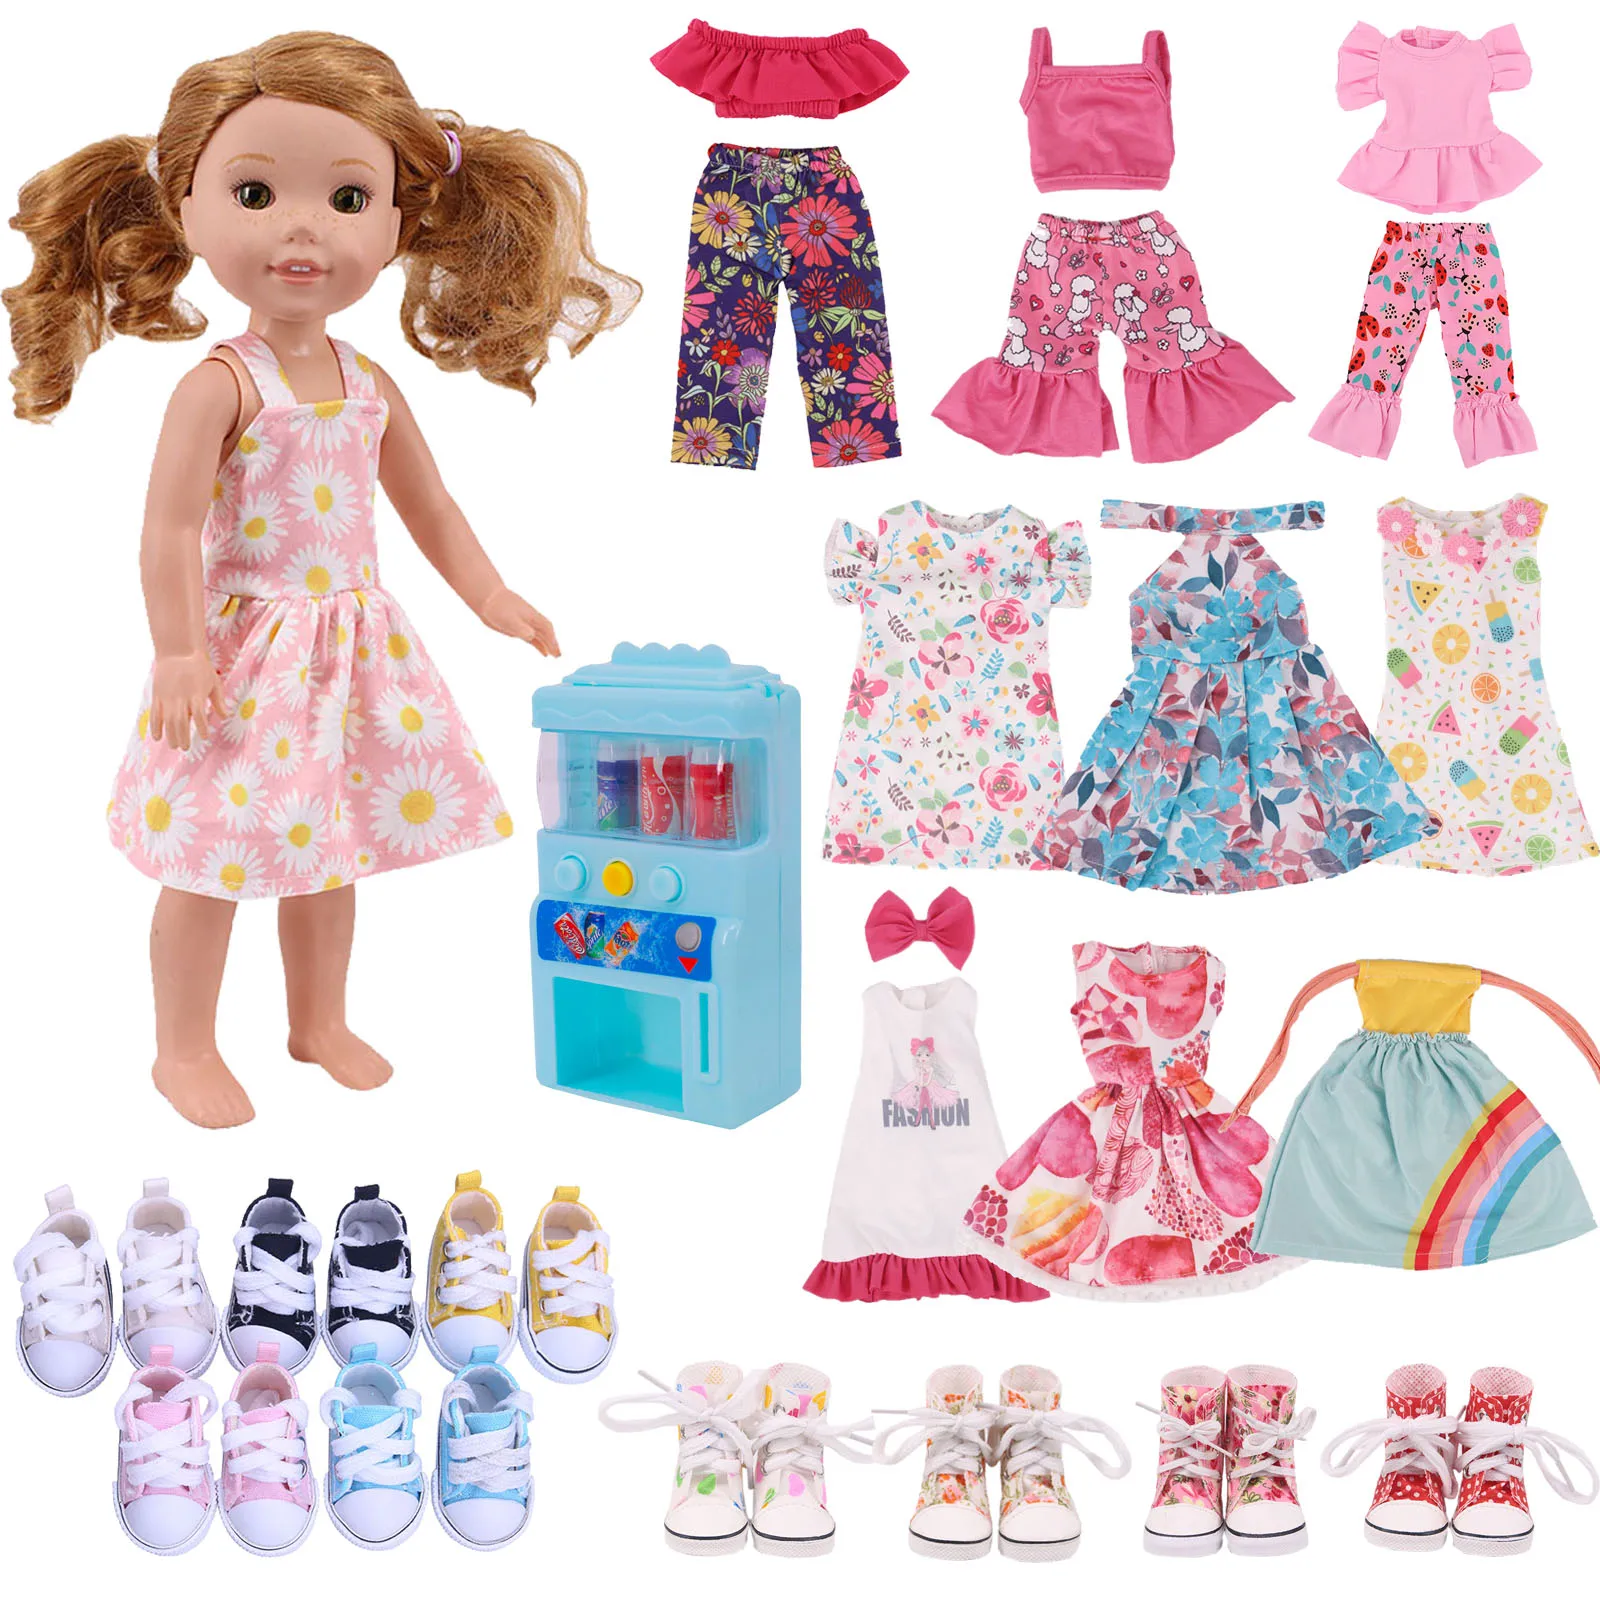 Barbie Doll Moda Roupas Set para Meninas, Vestido de Festa, Colar Outfits,  Sapatos Acessórios, Aniversário e Presentes de Natal, Original